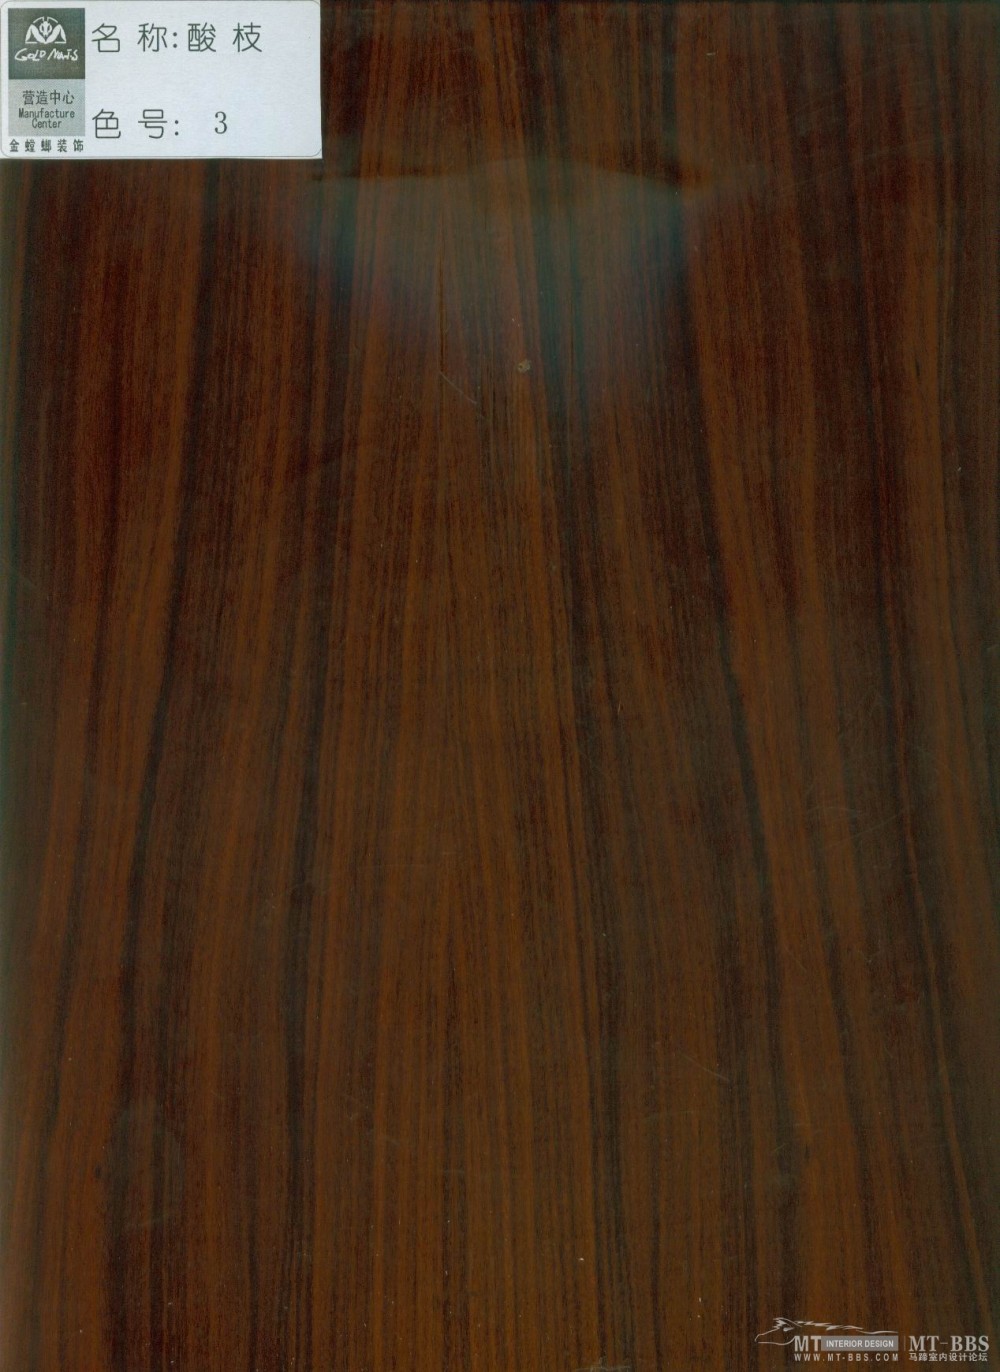 金螳螂--金螳螂装饰营造中心木材色板_酸枝3号色.jpg